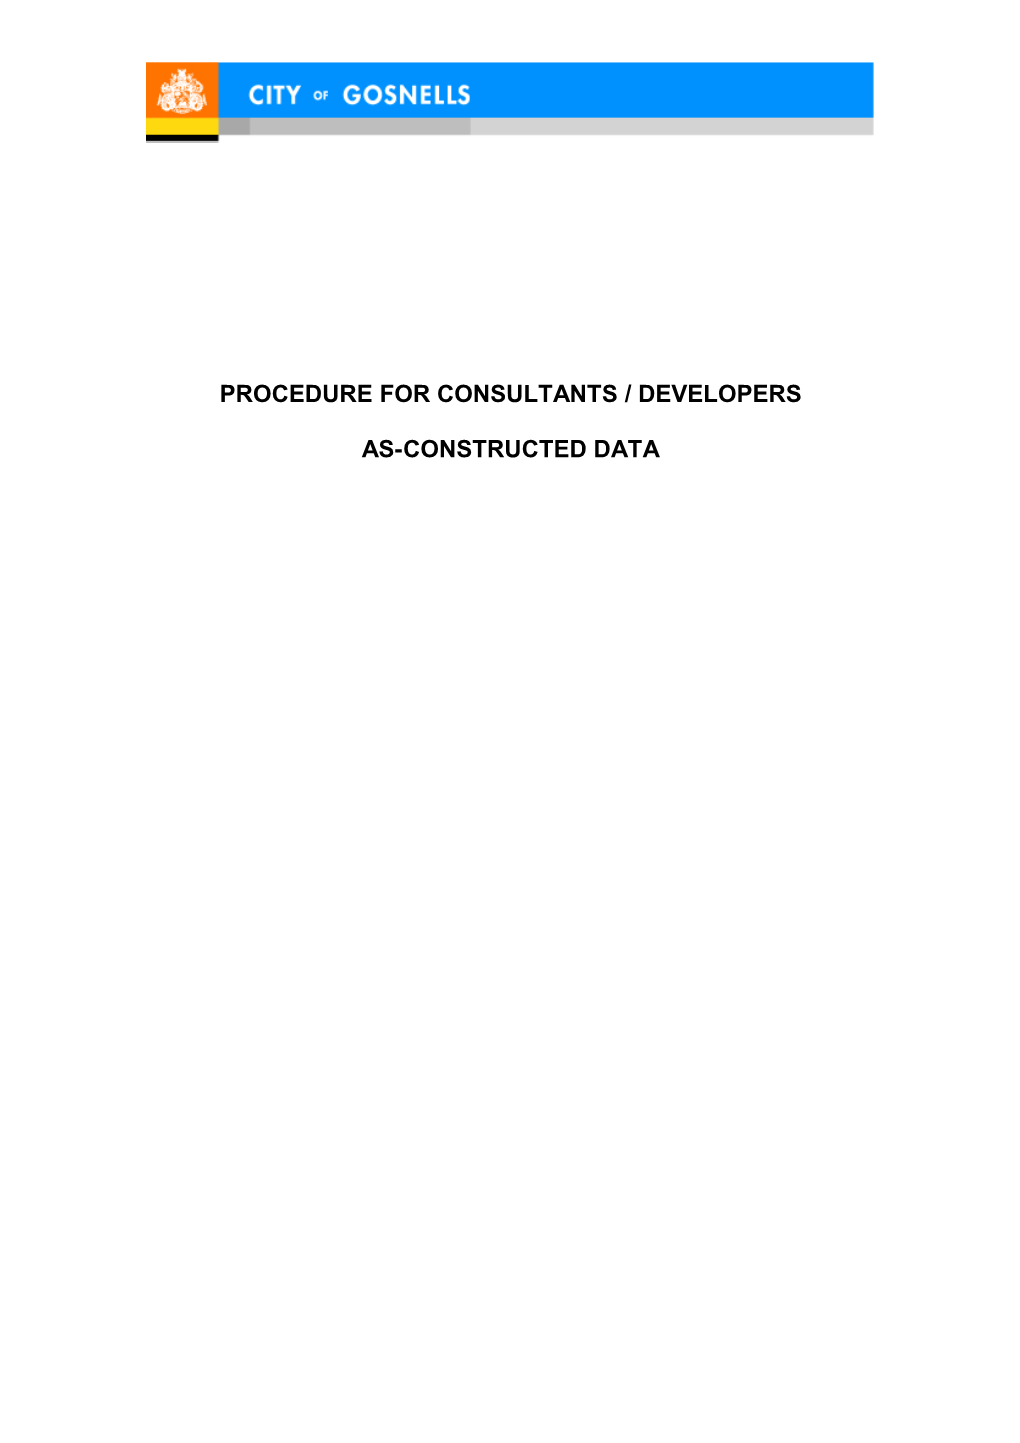 Procedure for Consultants / Developers